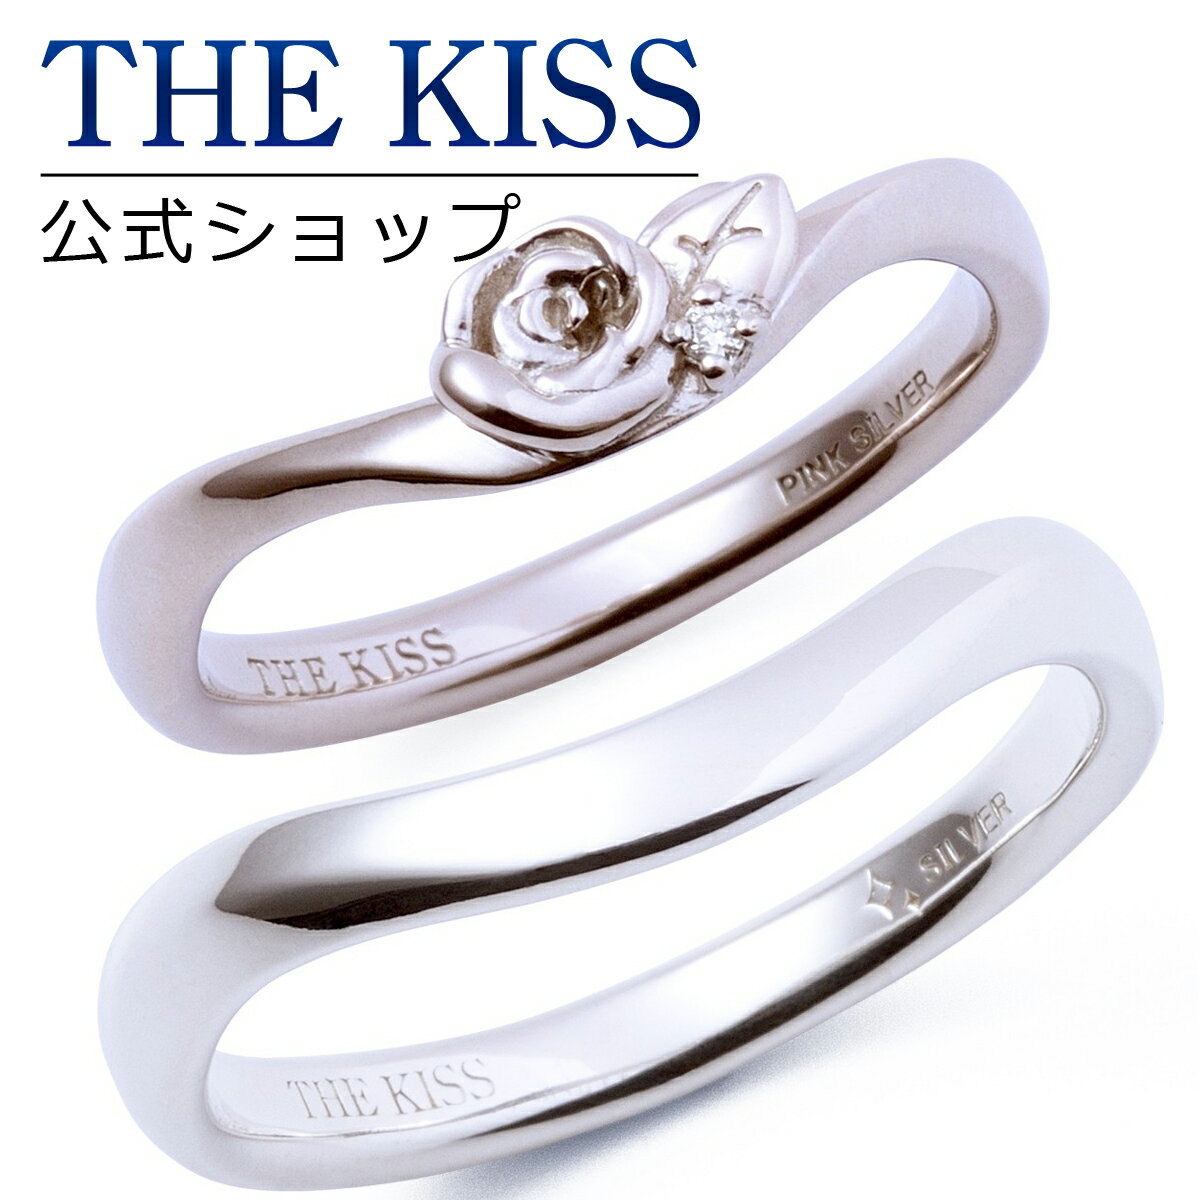 【刻印可_1文字】THE KISS 公式ショップ シルバー ペアリング ペアアクセサリー カップル に 人気 の ジュエリーブランド THEKISS ペア リング・指輪 記念日 プレゼント PSV1326DM-PSR826 セット シンプル 男性 女性 2個ペア ザキス 【送料無料】 【あす楽対応】